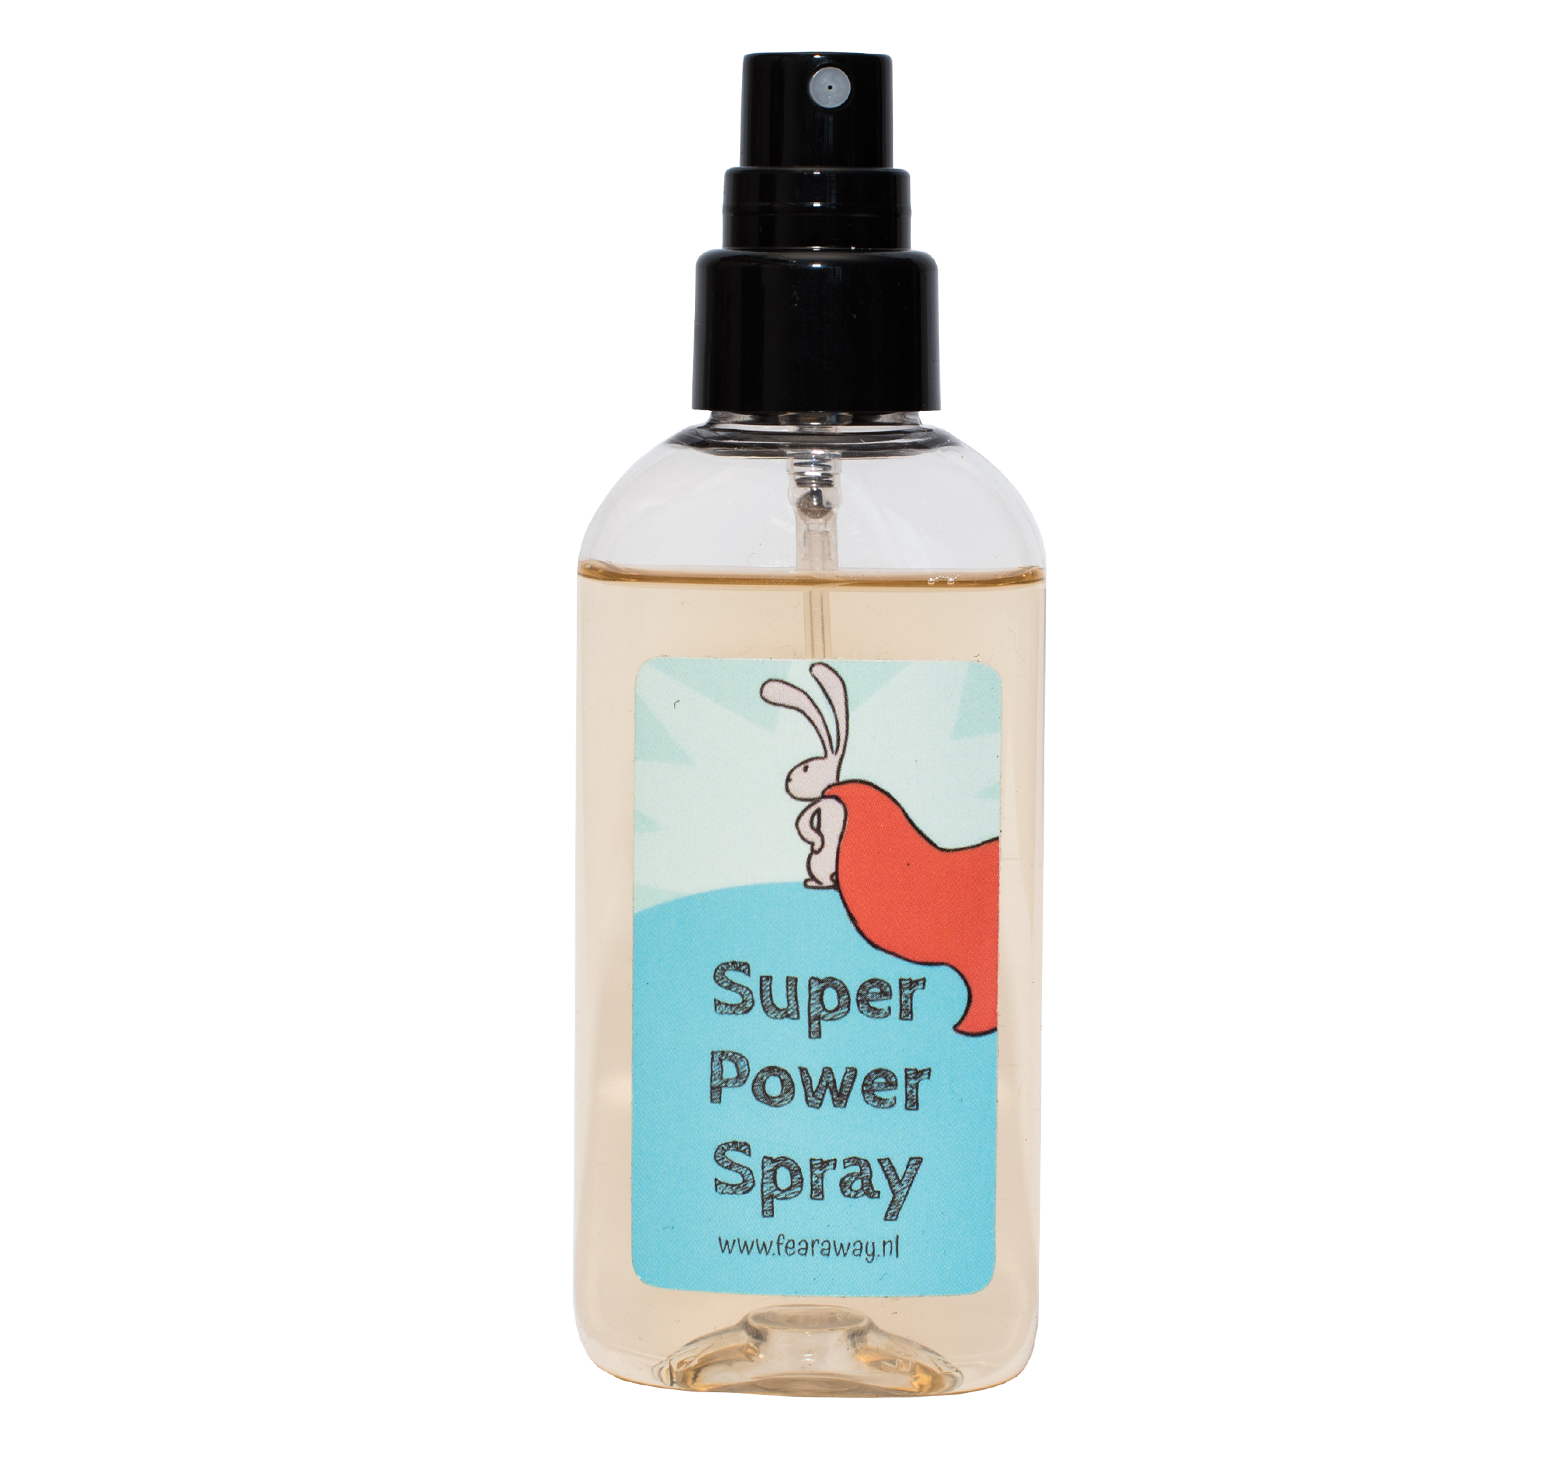 Super-Power-Spray von Fear Away